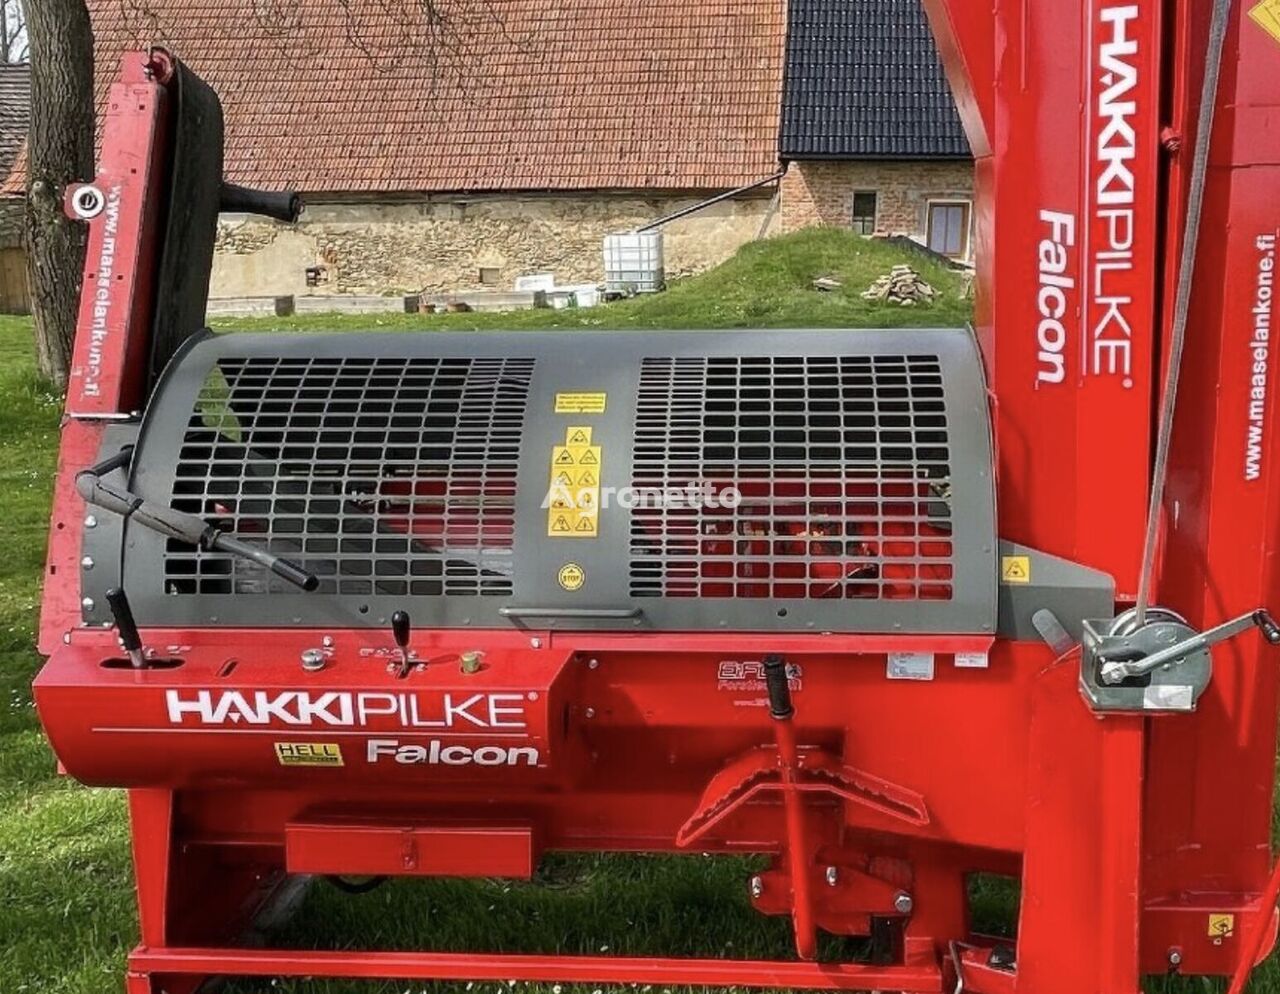 Hakki Pilke 35 Falcon Pohon Traktor 2020 rajadora de leña